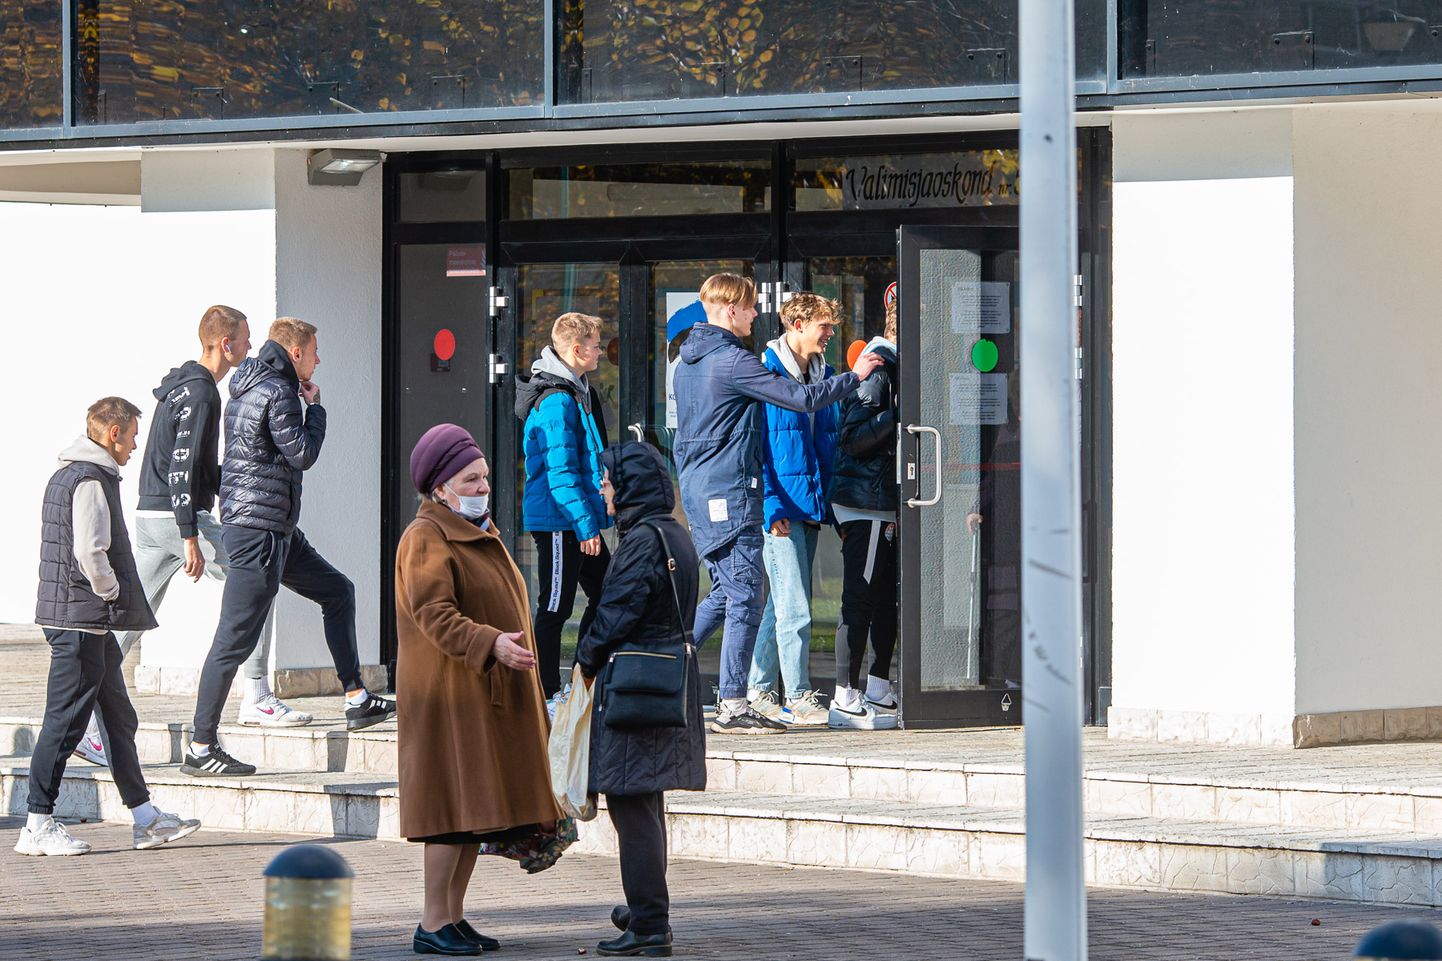 Во время предварительного голосования в Нарве. Проголосовать дружно приехали на автобусе юные футболисты клуба "Narva Trans", президент которого в списке кандидатов.